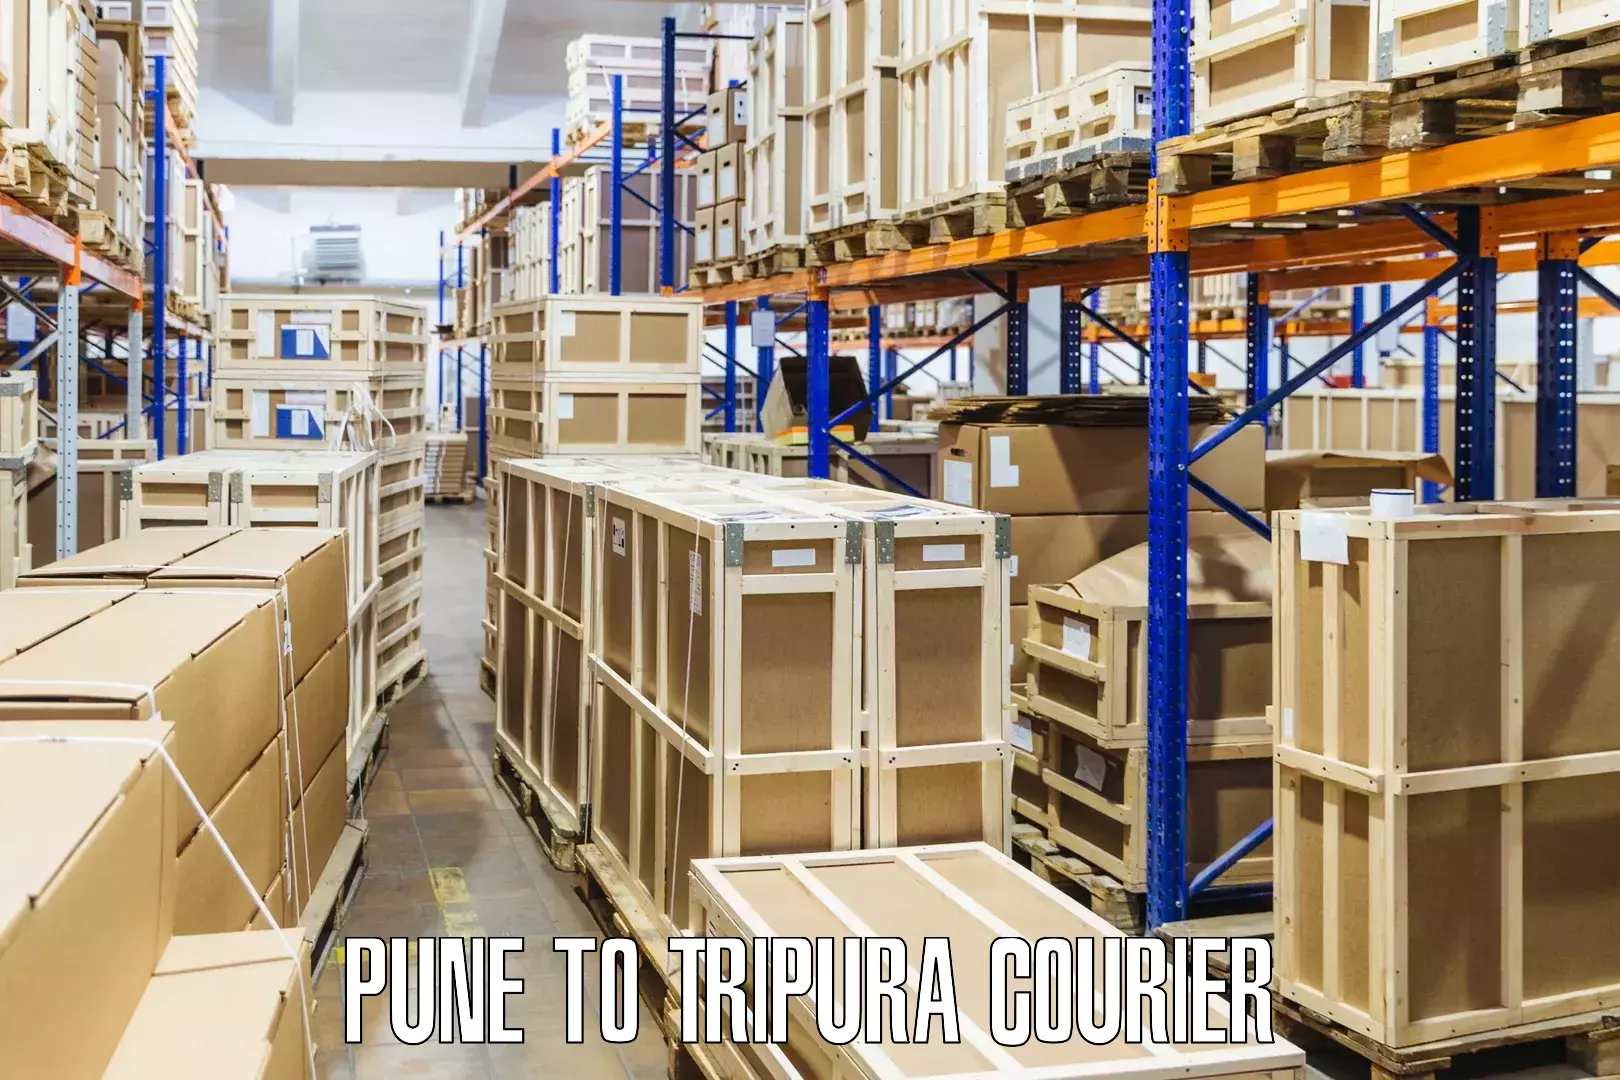 Flexible parcel services Pune to Manu Bazar